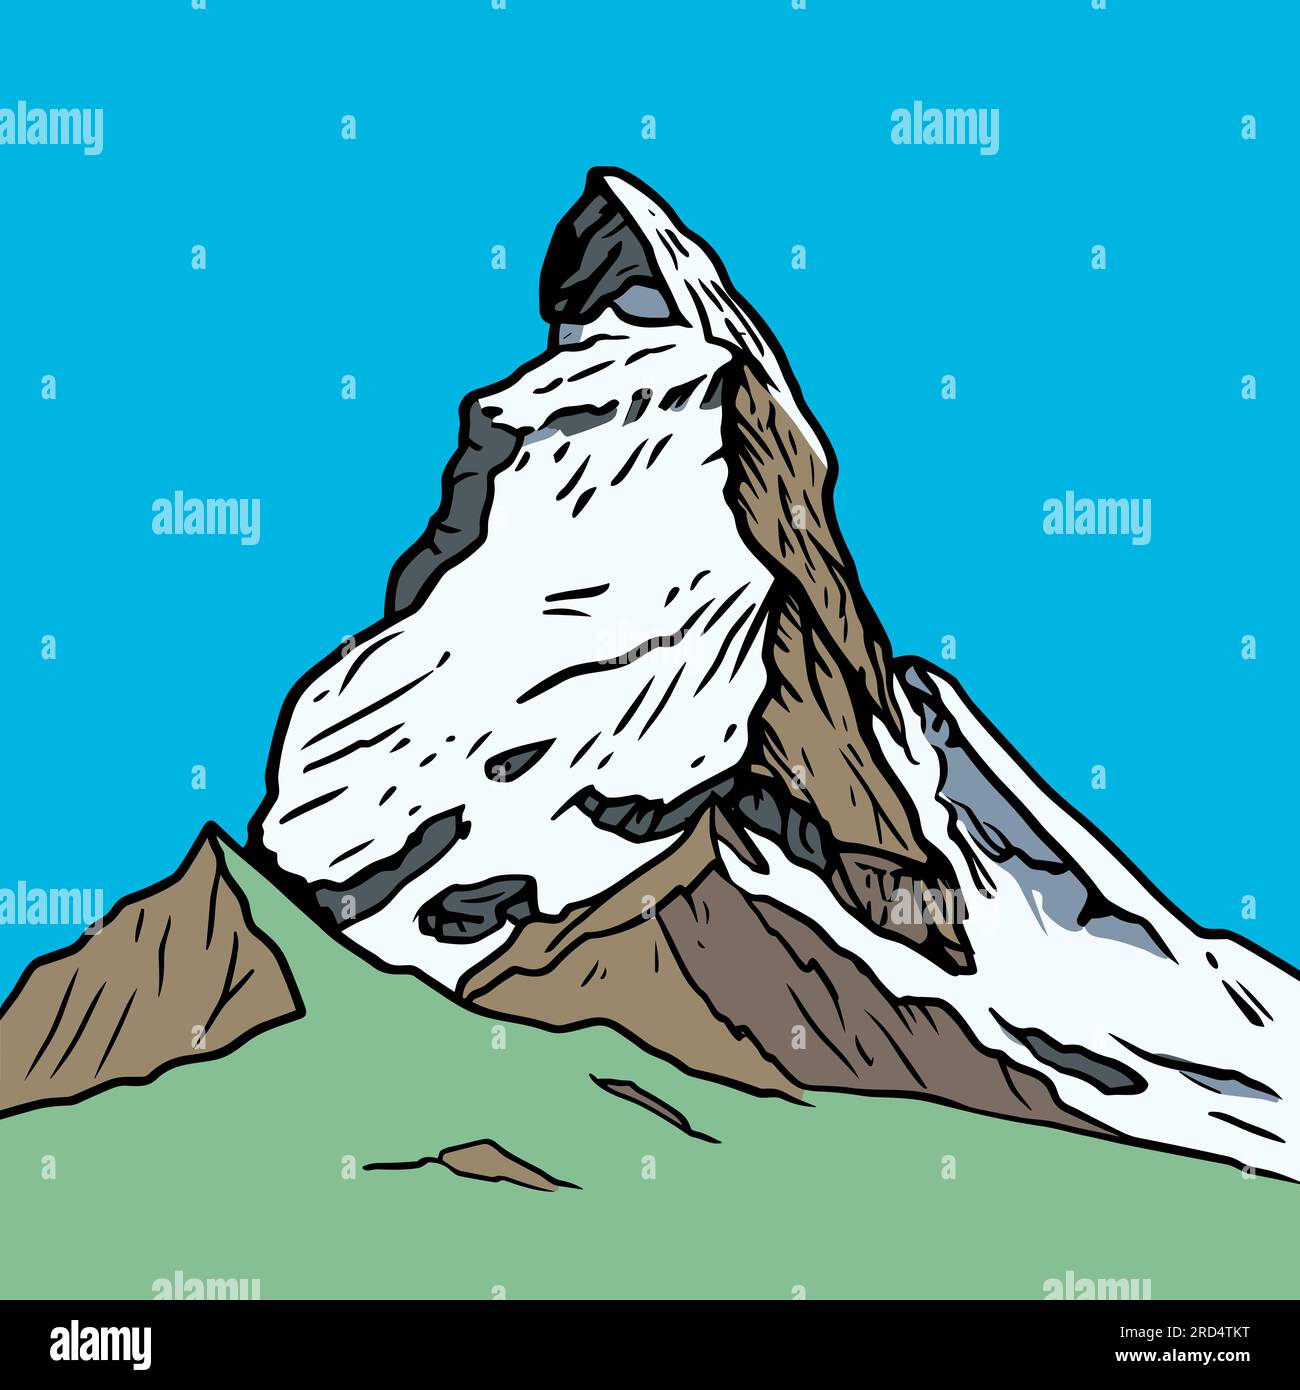 Matterhorn. Matterhorn hand-drawn comic illustration. Vector doodle ...